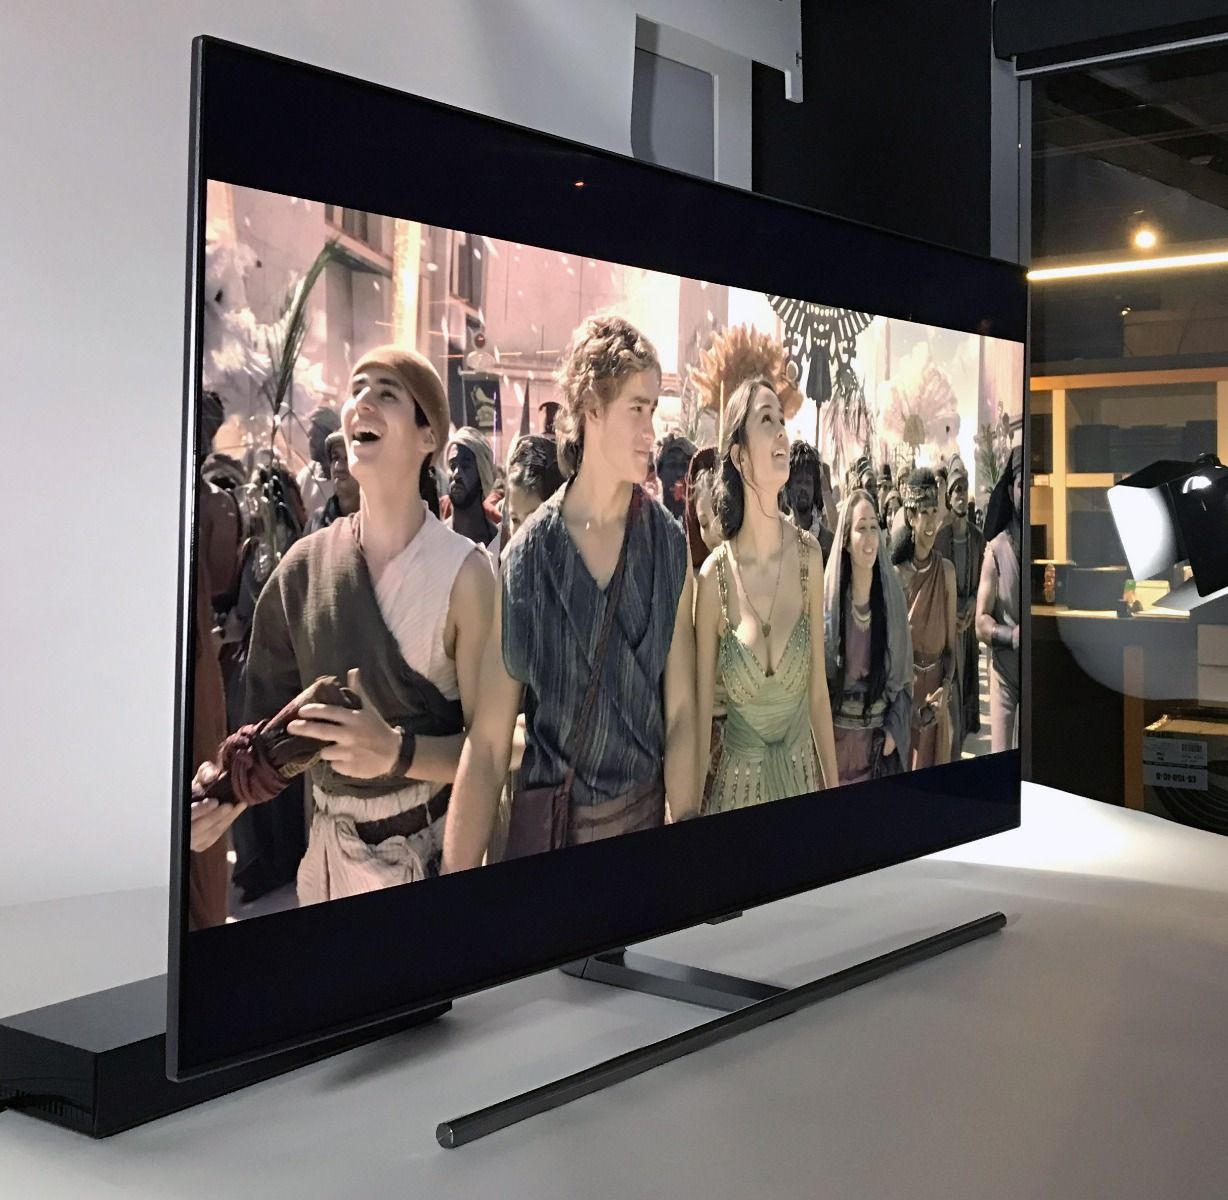 Photo de l'angle de visionnement du téléviseur 4K HDR Q7FNA de Samsung